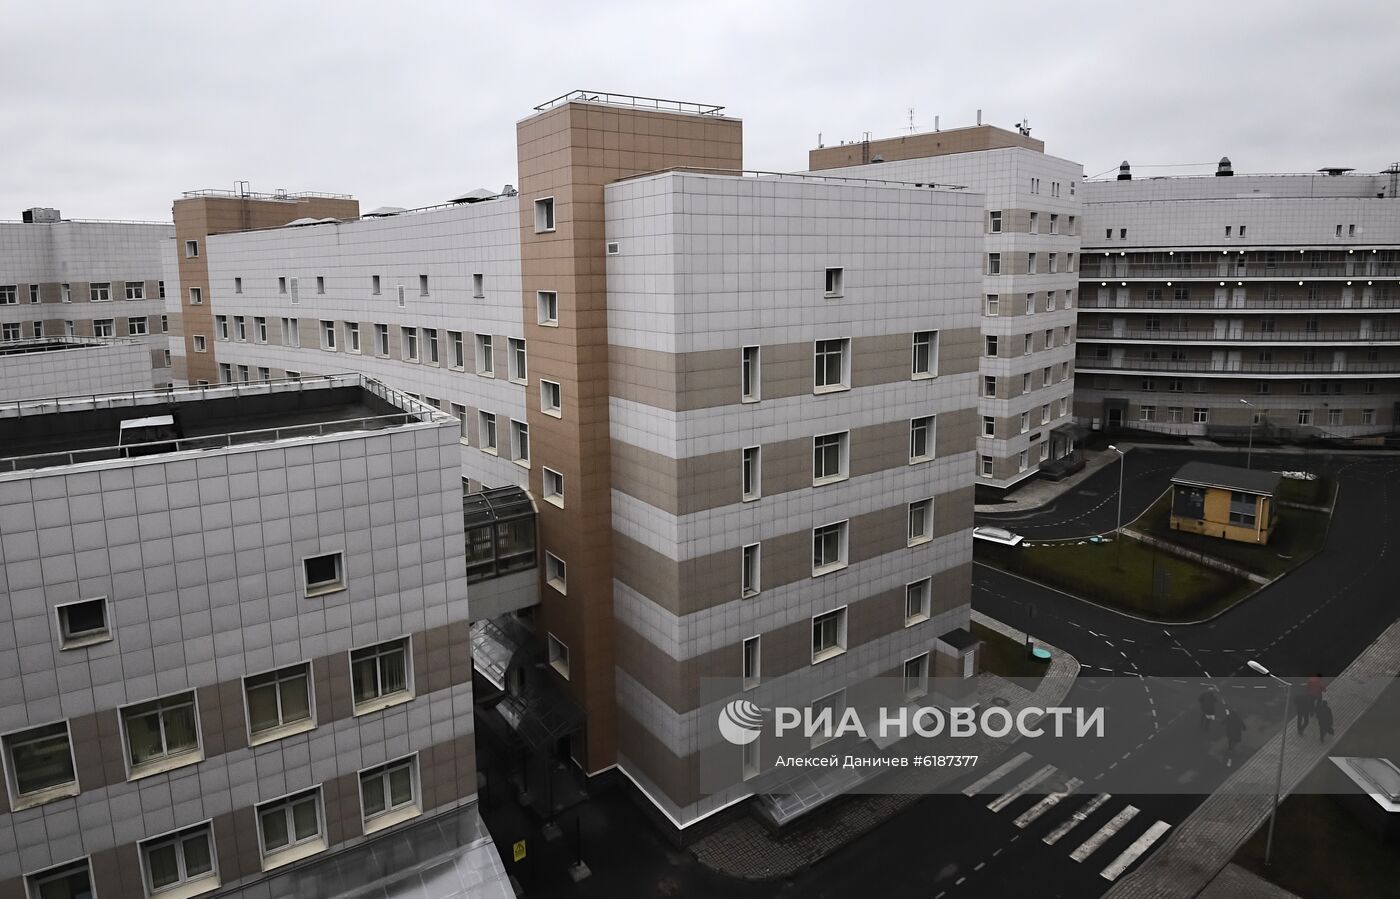 Отделение для людей с подозрением на коронавирус в Боткинской больнице